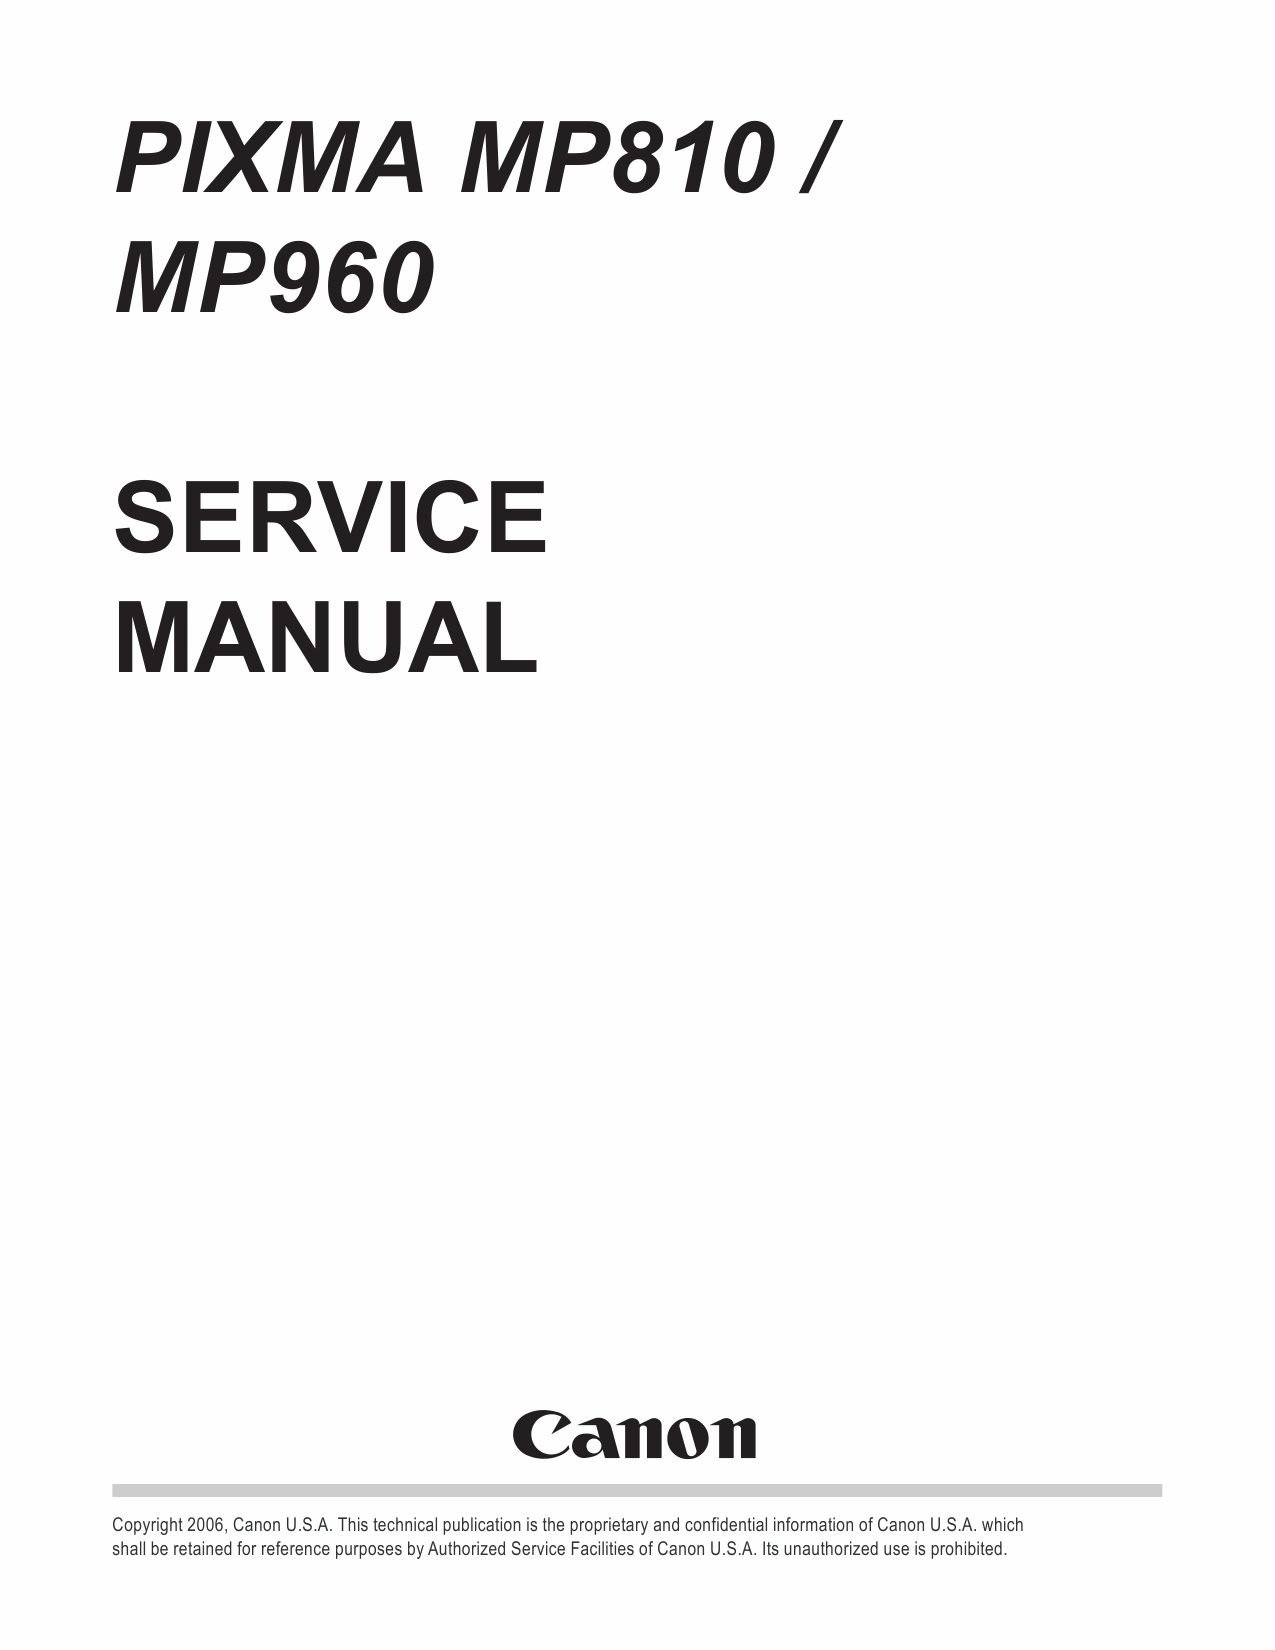 Canon PIXMA MP960 MP810 Service Manual-1